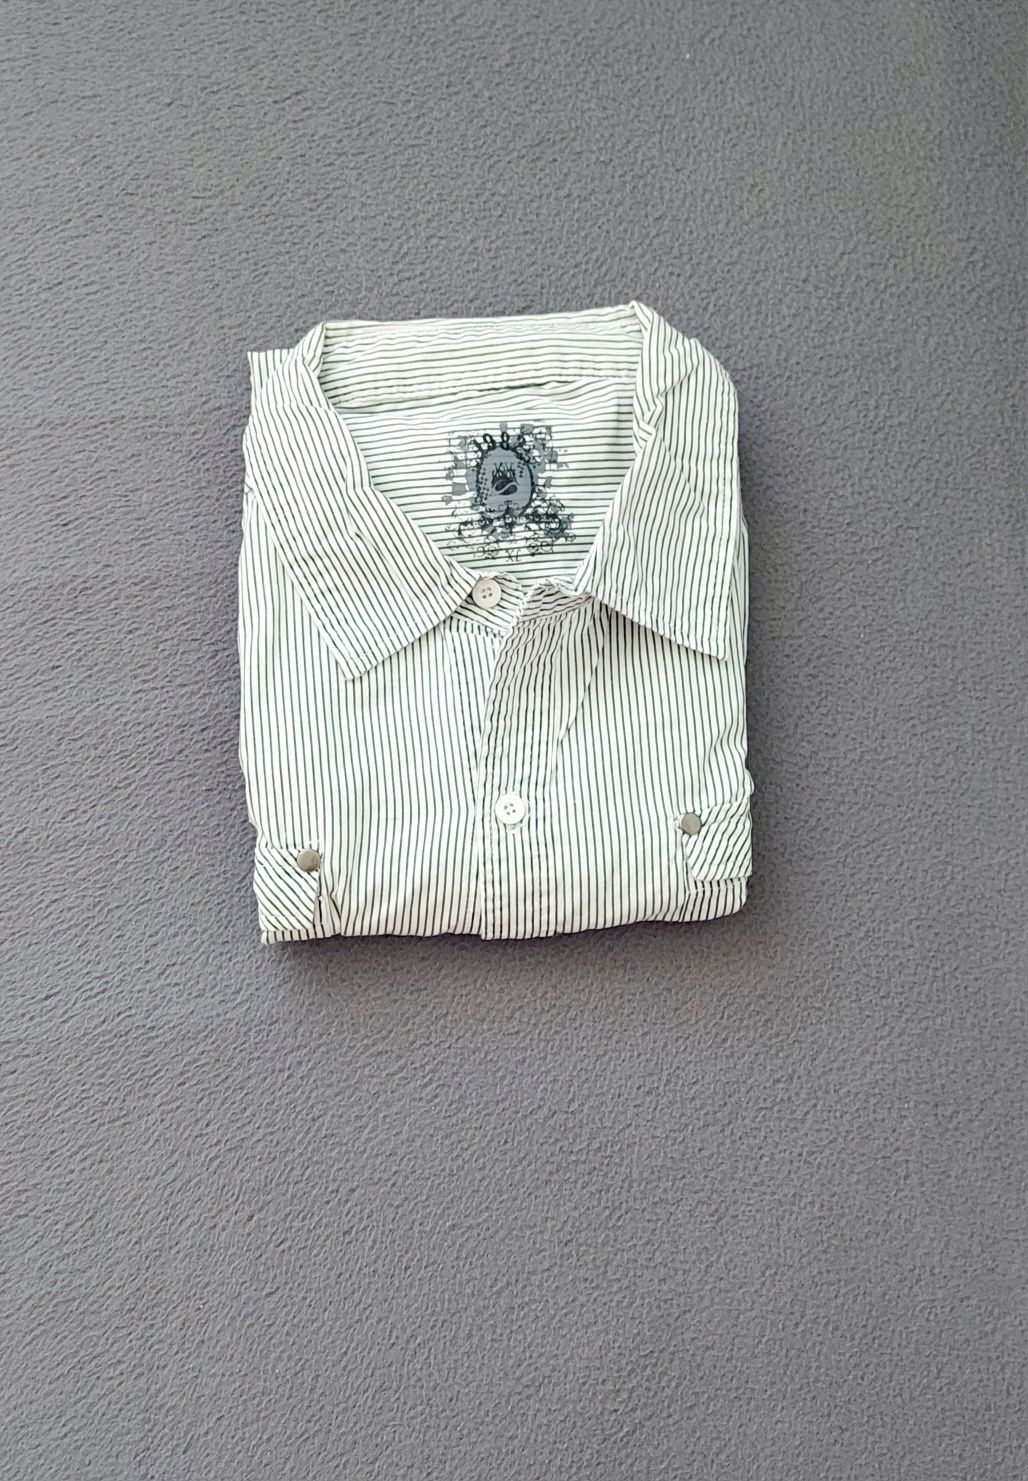 Koszula męska w paski biała rozmiar L